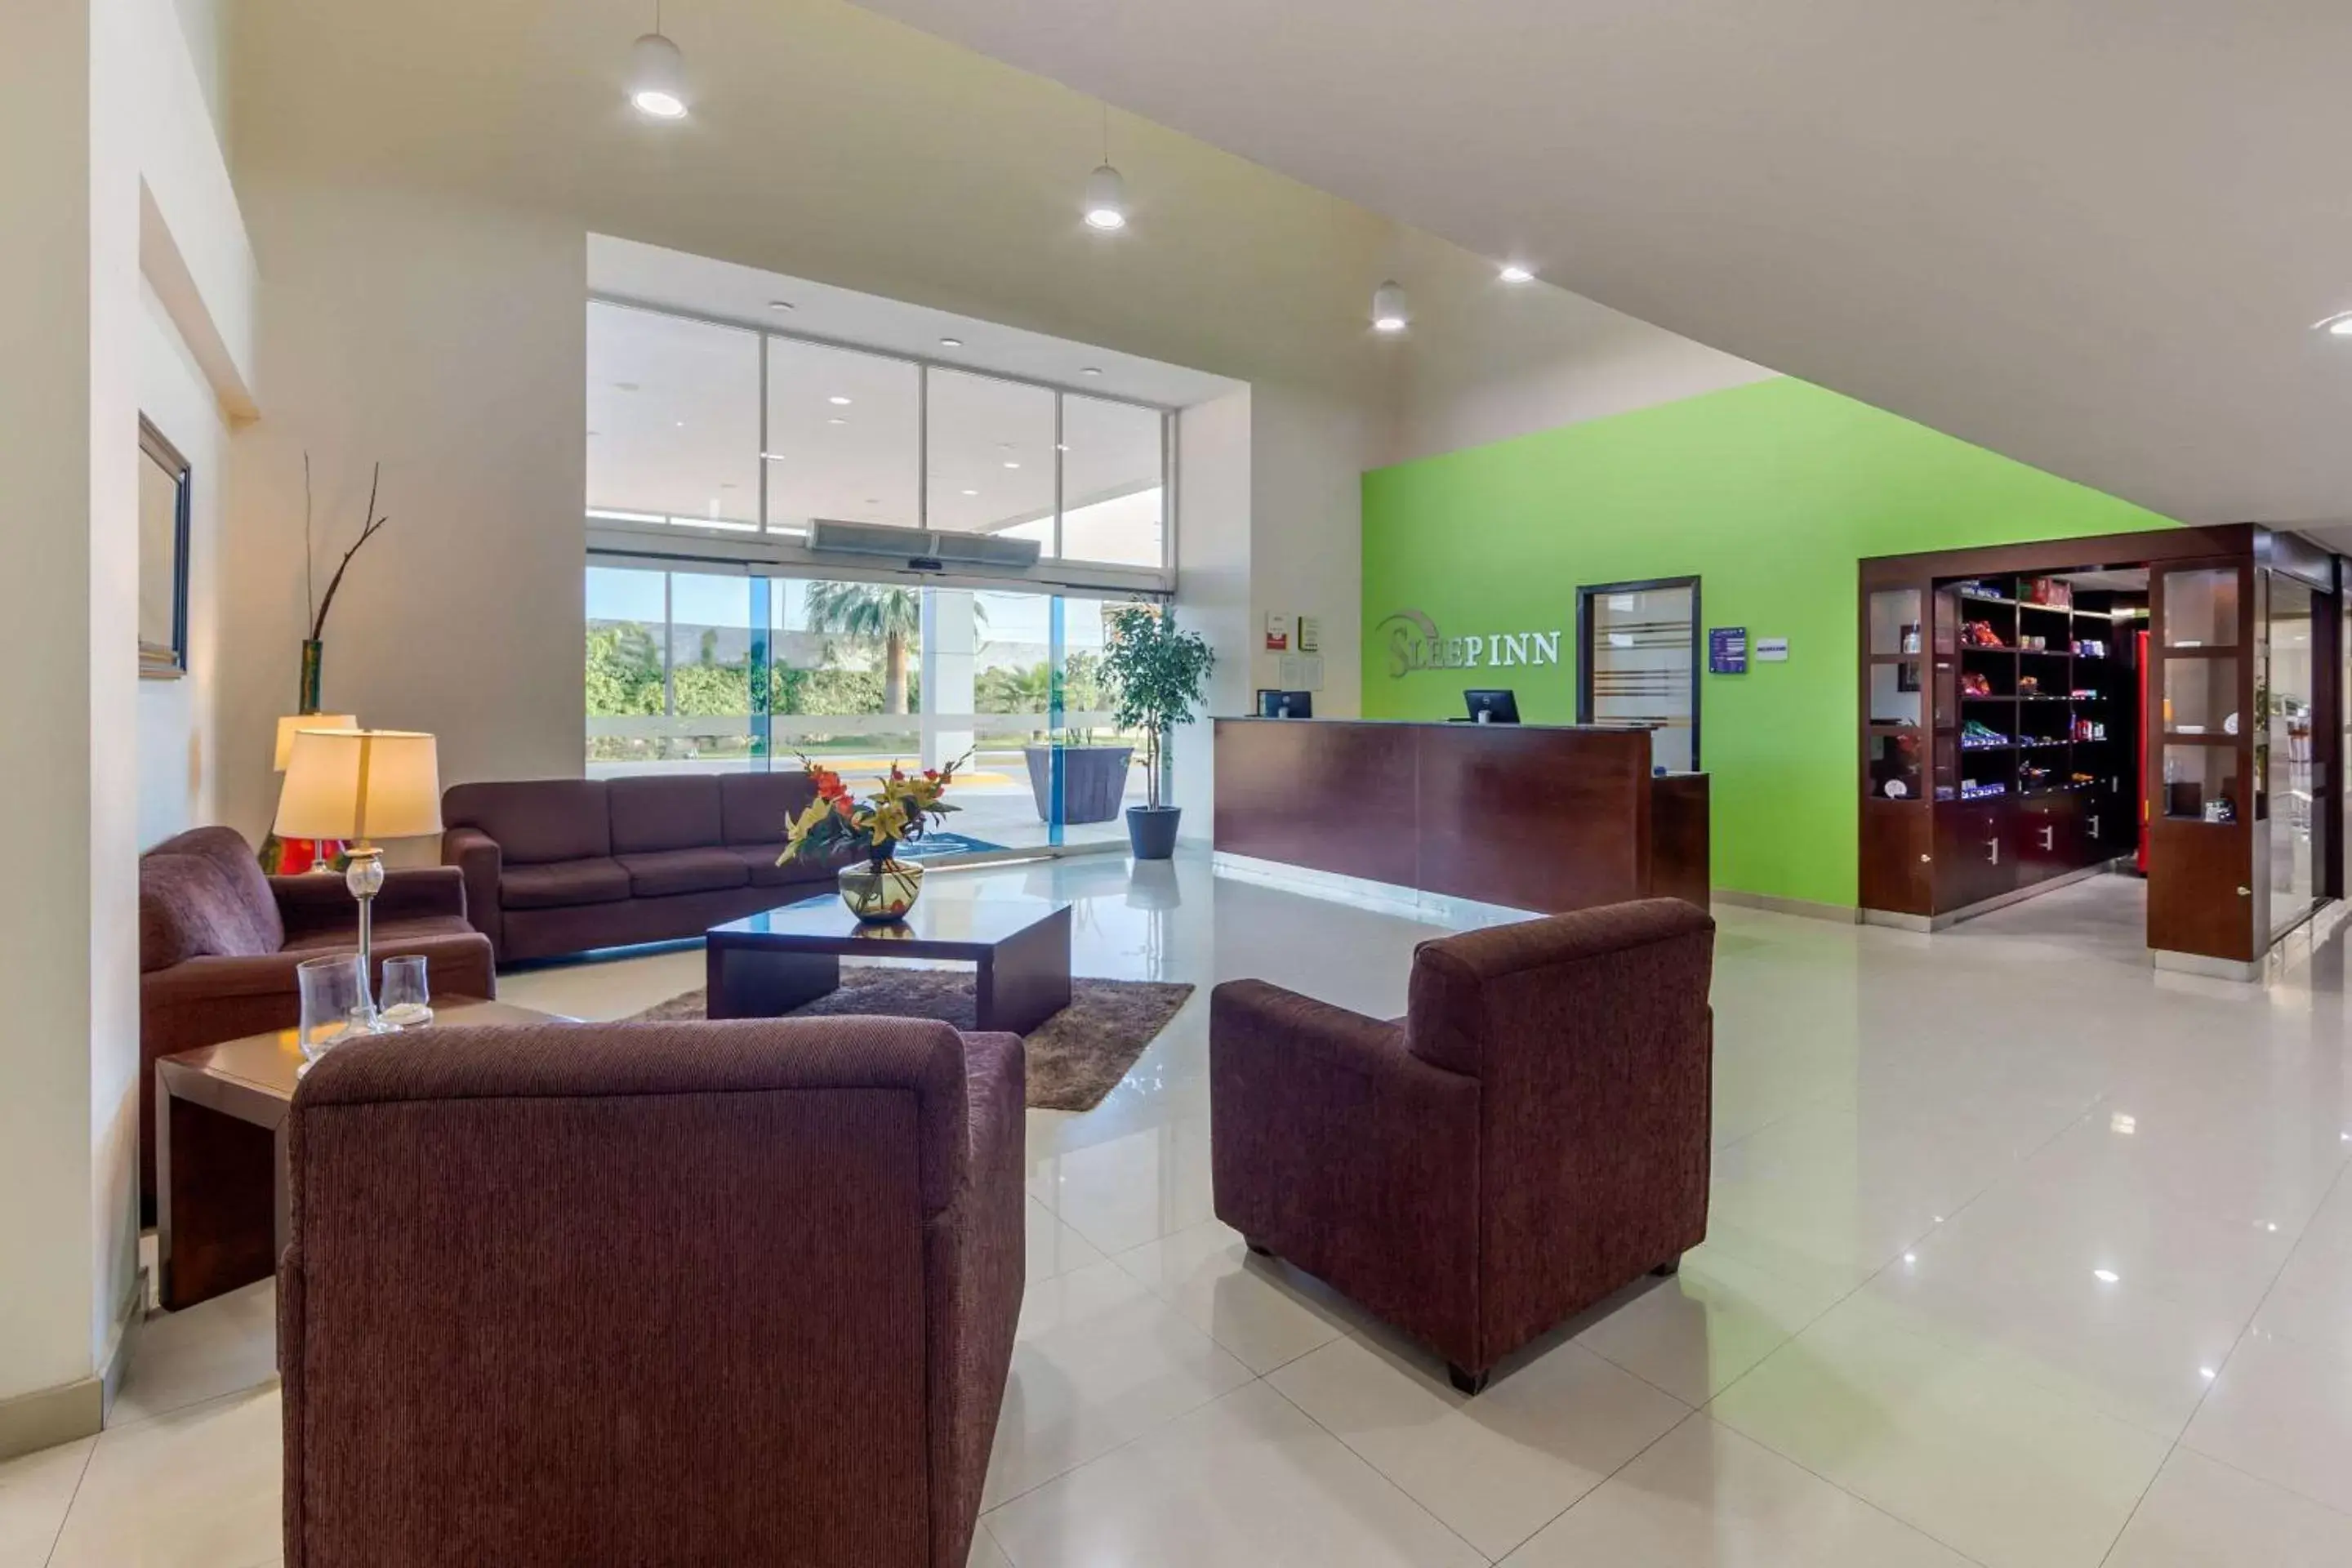 Lobby or reception, Lobby/Reception in Sleep Inn Torreon